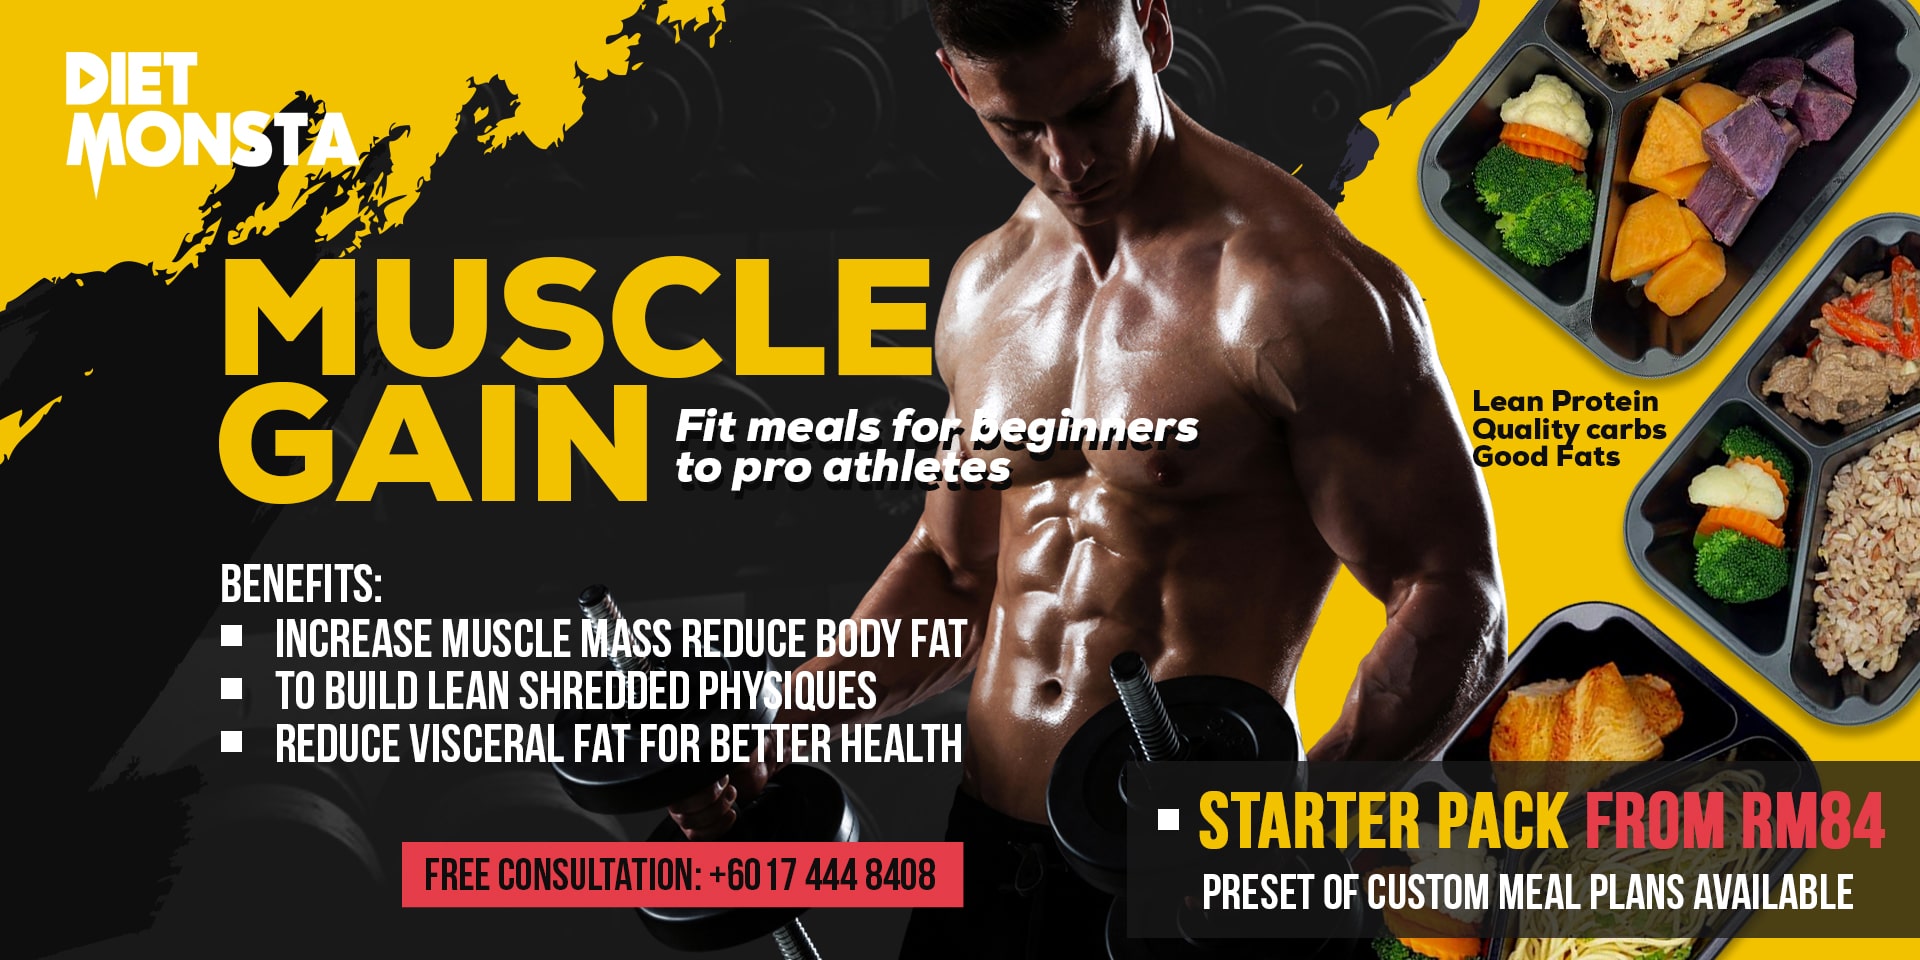 Muscle build diet plan pdf